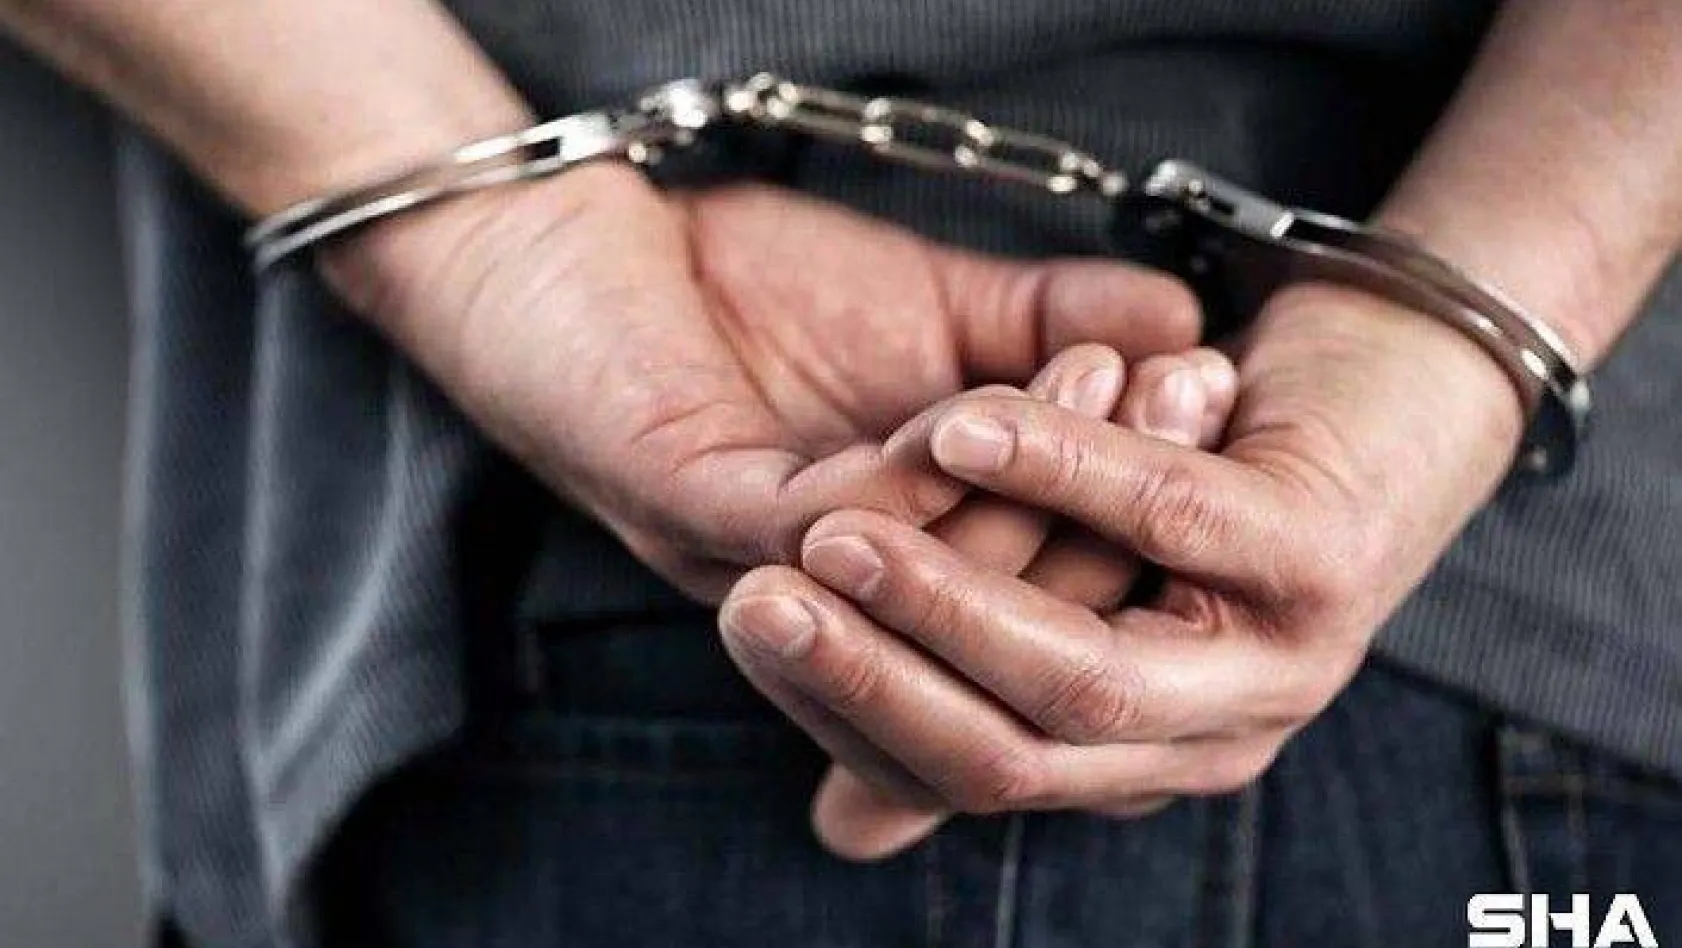 Mertcan Kaya cinayetinde tutuklu sayısı 8'e yükseldi